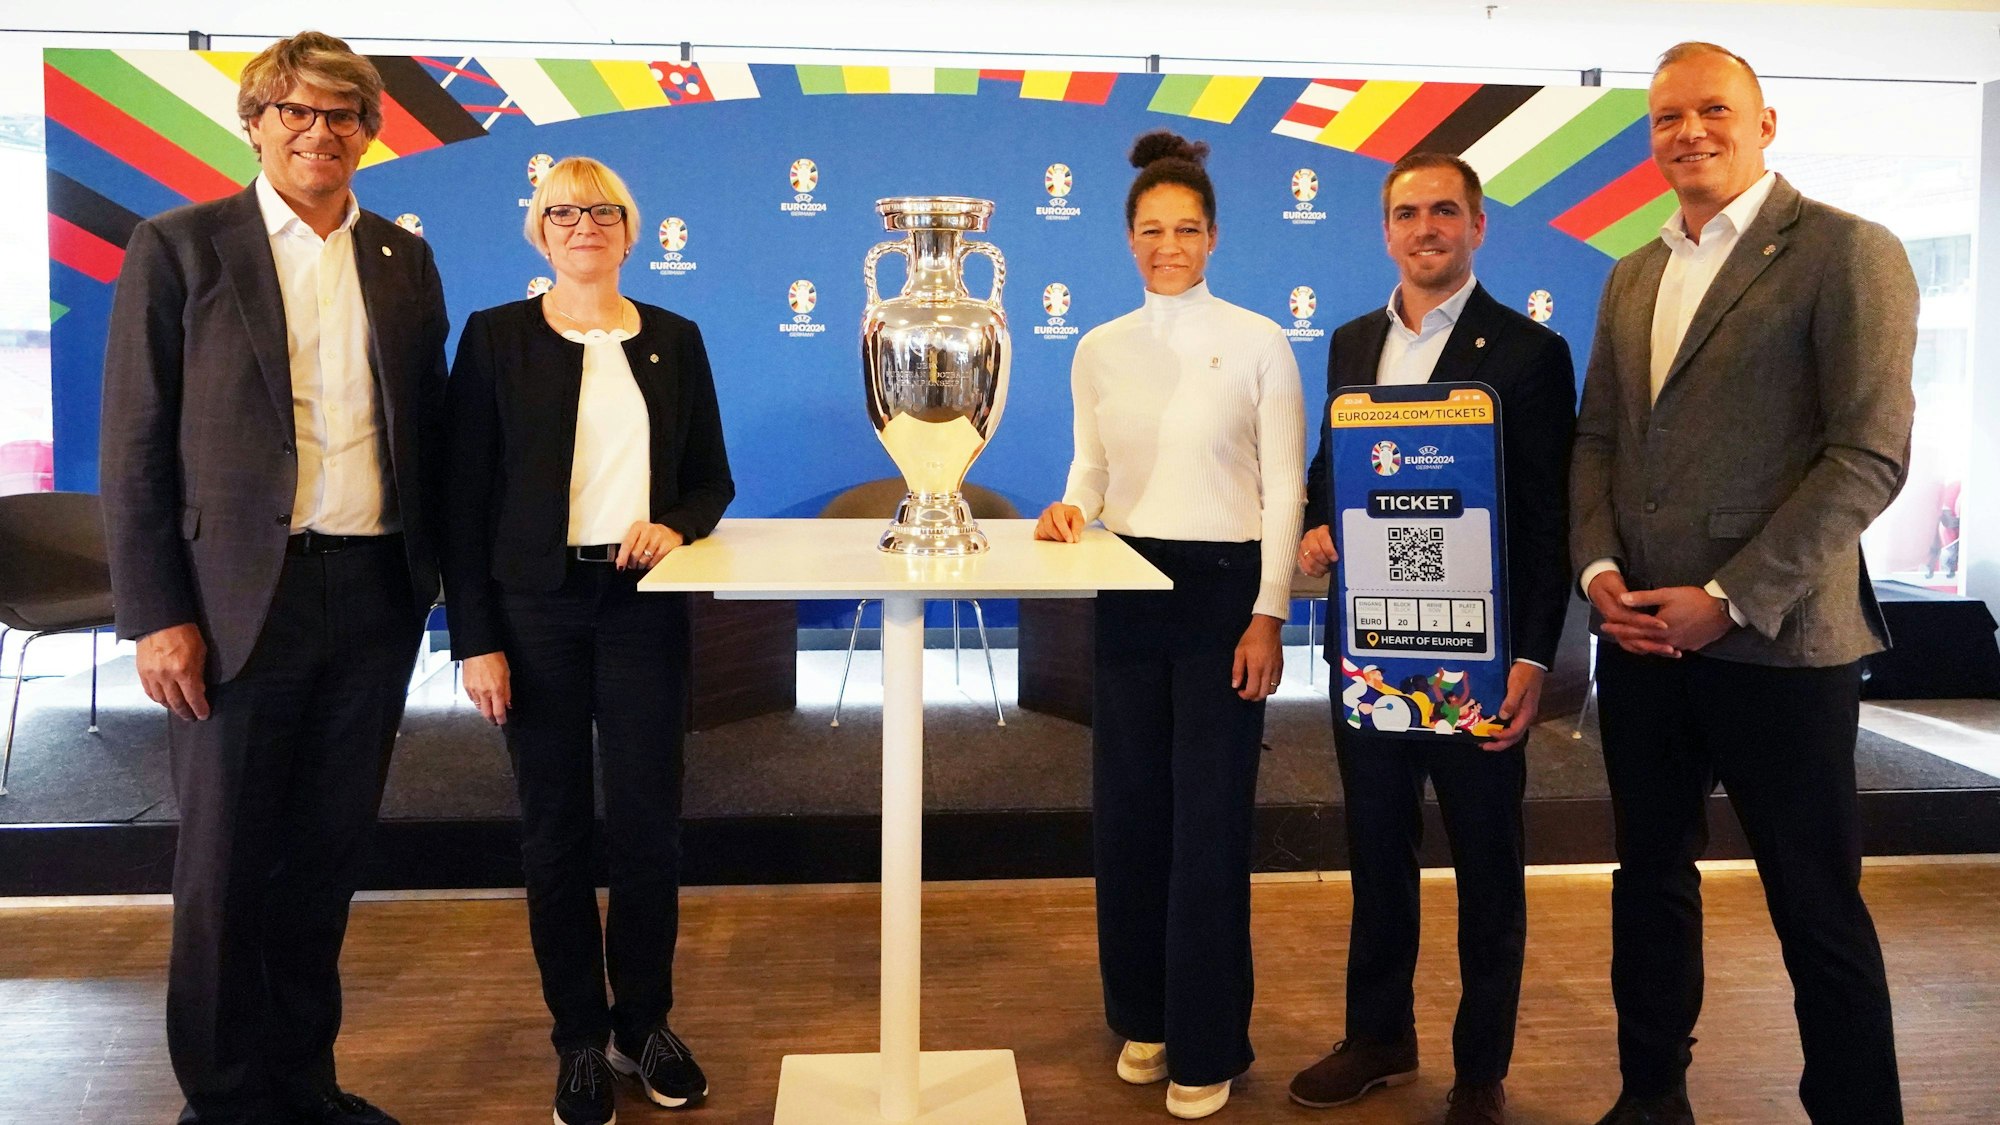 Pressekonferenz anlässlich der Partnerschaft zwischen der vdv und der UEFA EURO.